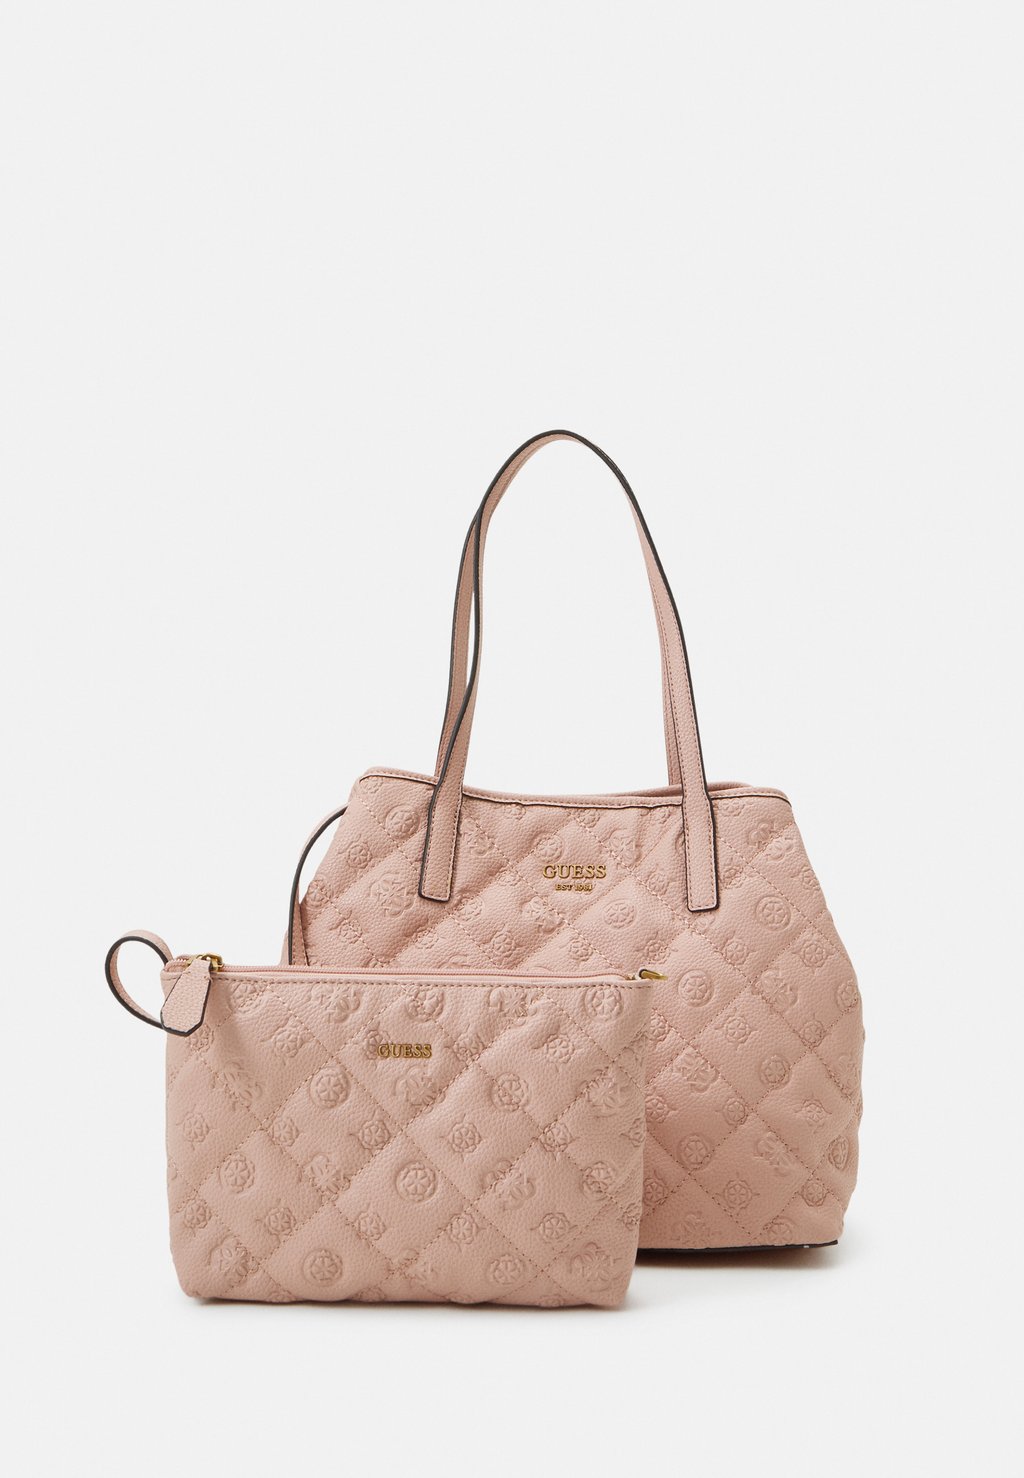 комплект сумок guess vikky geometric print 2 предмета малиновый Комплект сумок Guess Vikky 4G Peony Logo, 2 предмета, розовато-песочный